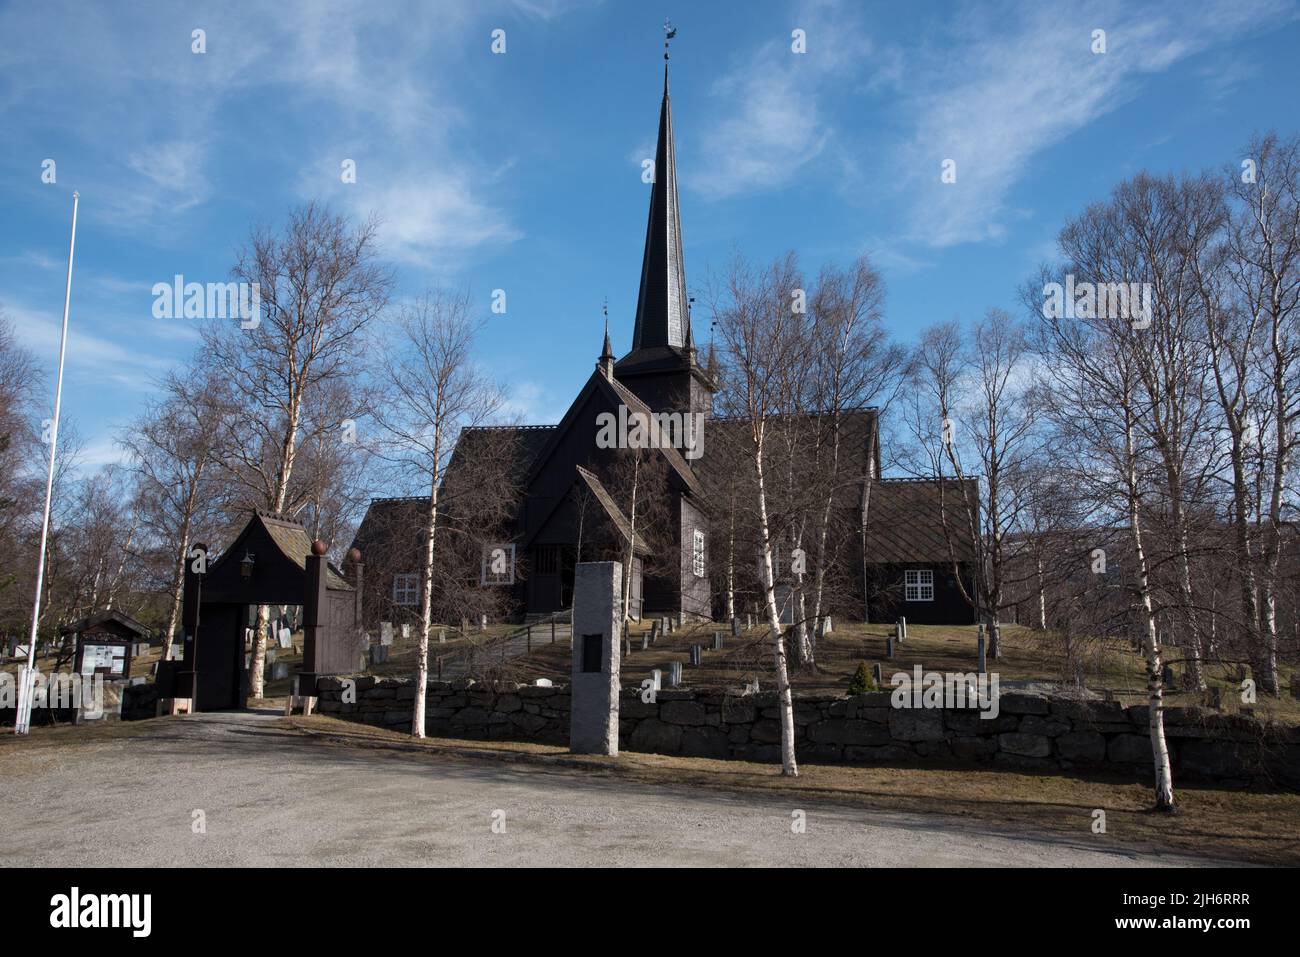 La iglesia de Lesja fue construida en 1749 con diseño cruciforme en Gudbrandsdalen, Noruega, en el condado de Innlandet. Foto de stock